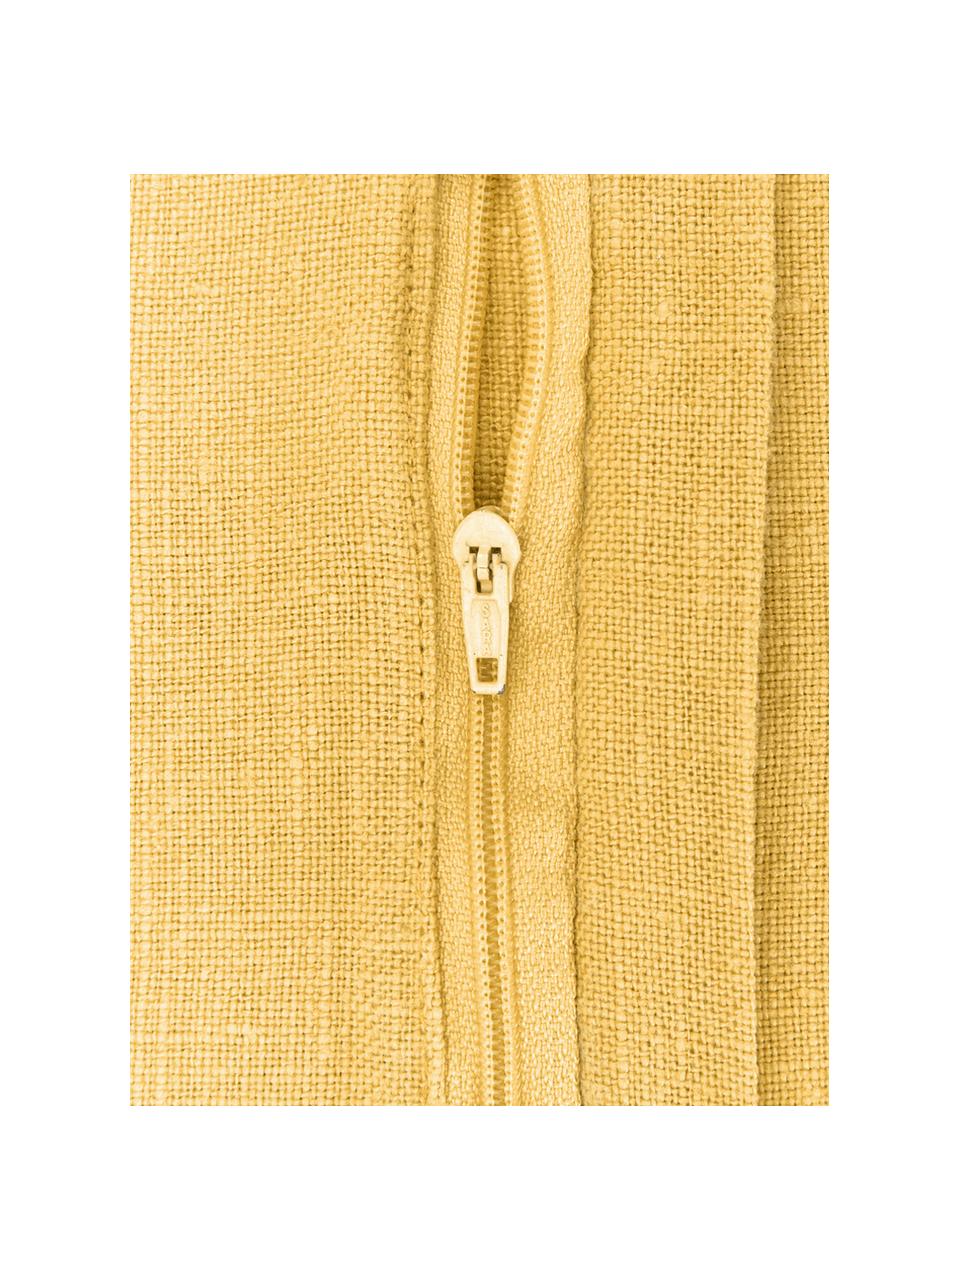 Leinen-Kissenhülle Lanya in Gelb, 100% Leinen

Leinen hat von Natur aus eher grobe Haptik und einen natürlichen Knitterlook. Die hohe Reißfestigkeit macht Leinen scheuerfest und strapazierfähig., Gelb, B 40 x L 60 cm